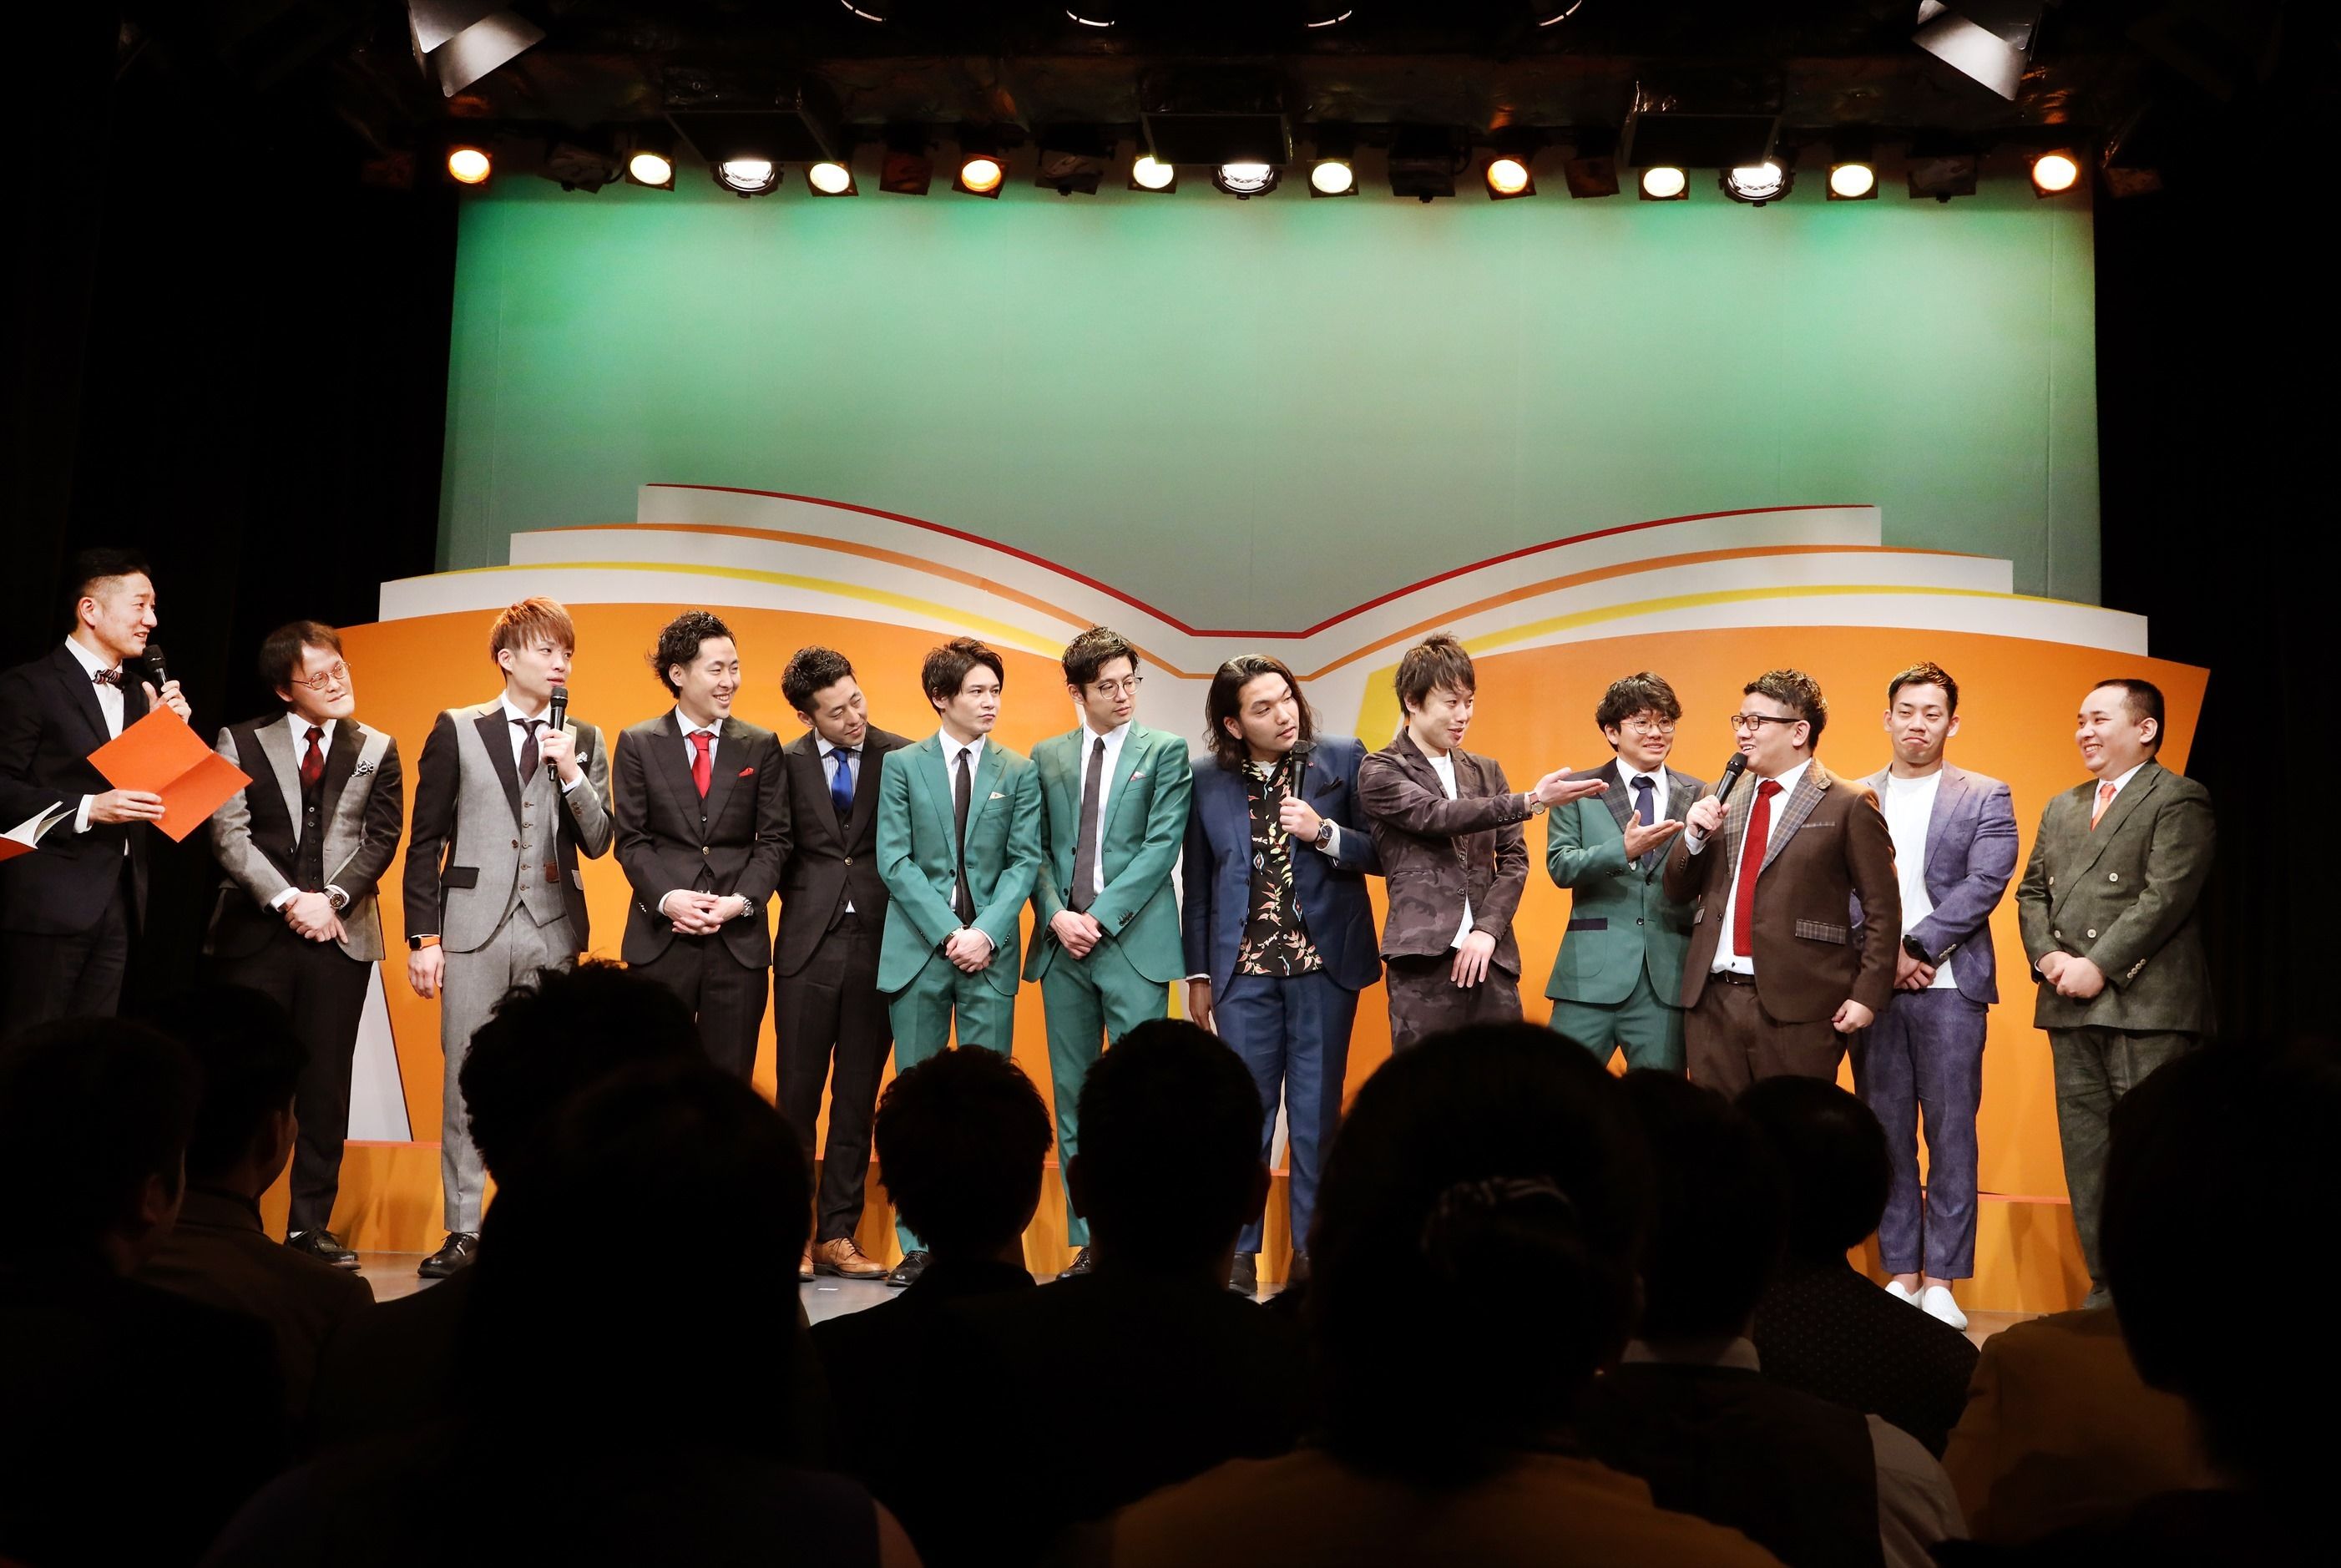 ほっとけない学生芸人GP2019王者「せきんにくん」が、吉本の劇場に潜入してみた #大学生の社会見学